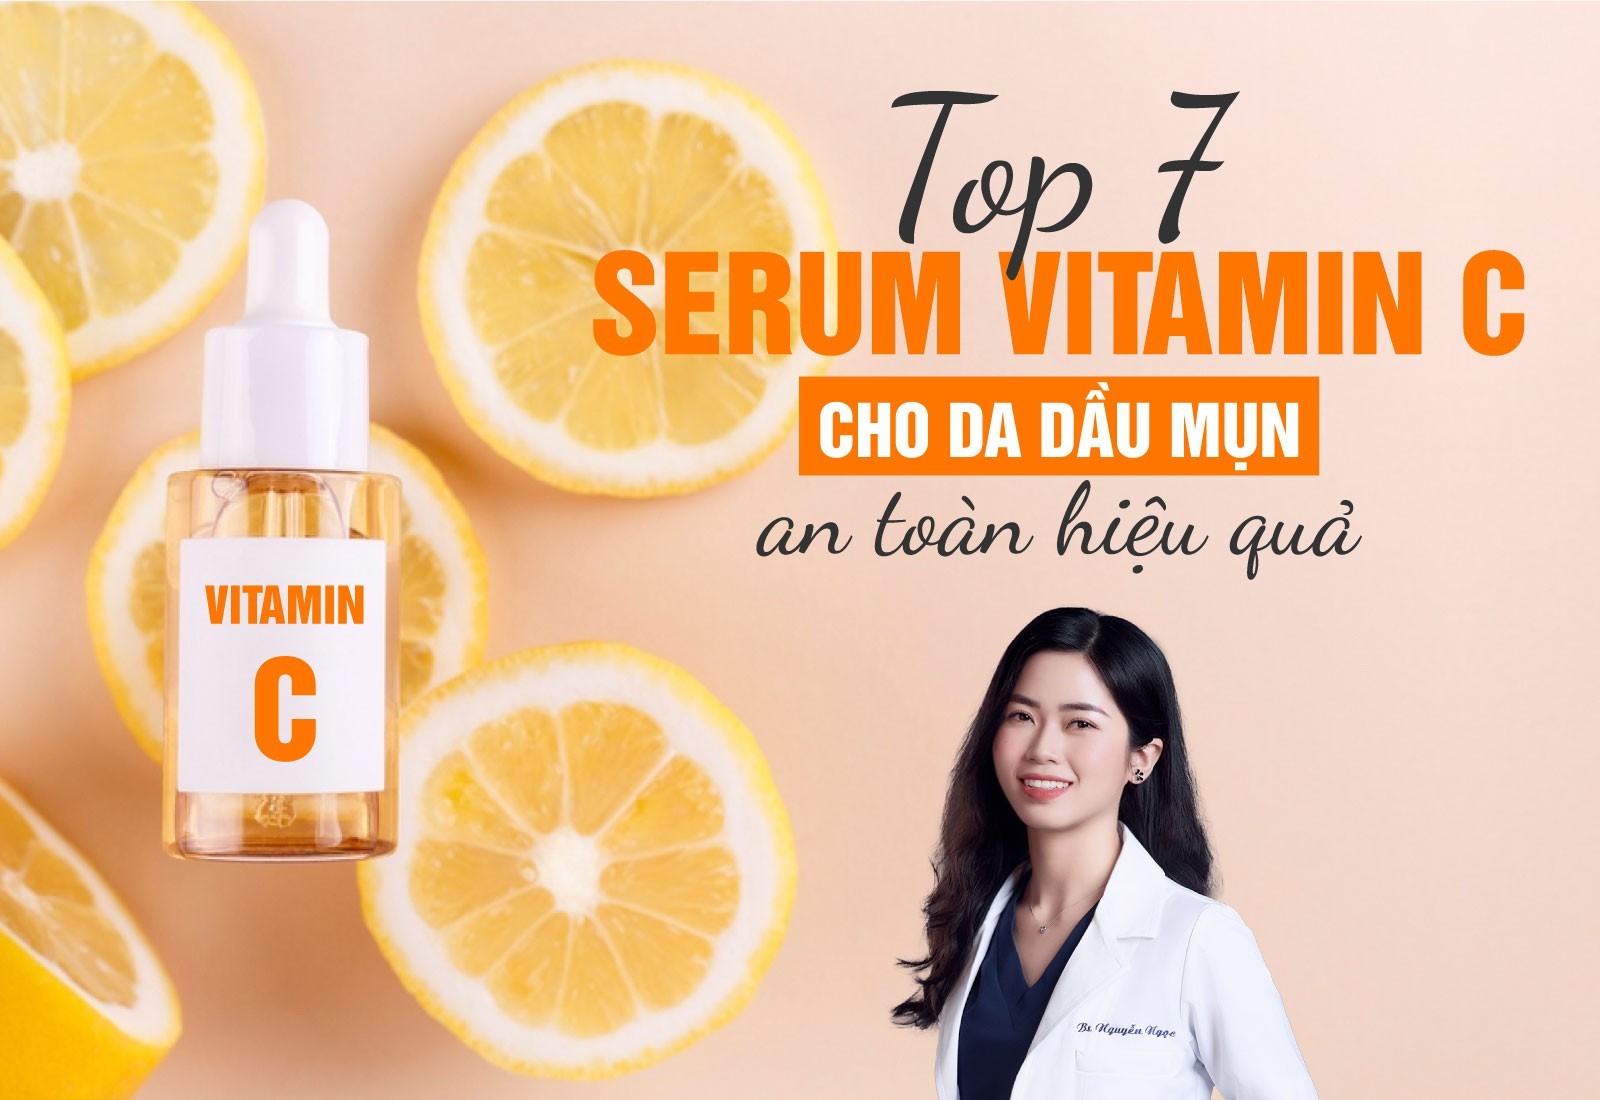 TOP 7 Serum vitamin c cho da dầu mụn an toàn hiệu quả